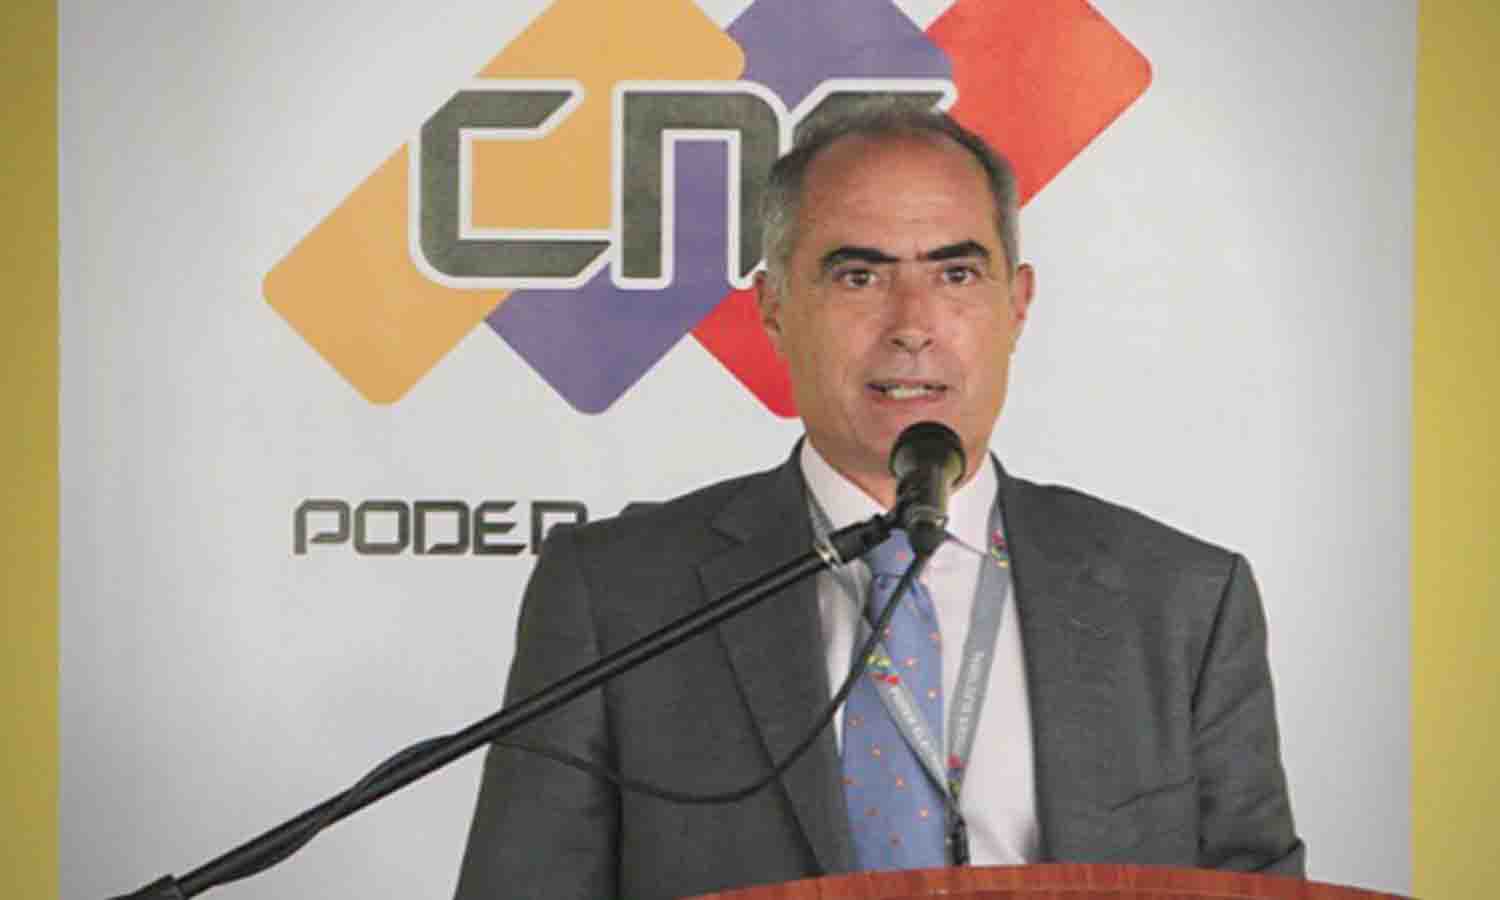 CNE rector Roberto Picón. File photo.